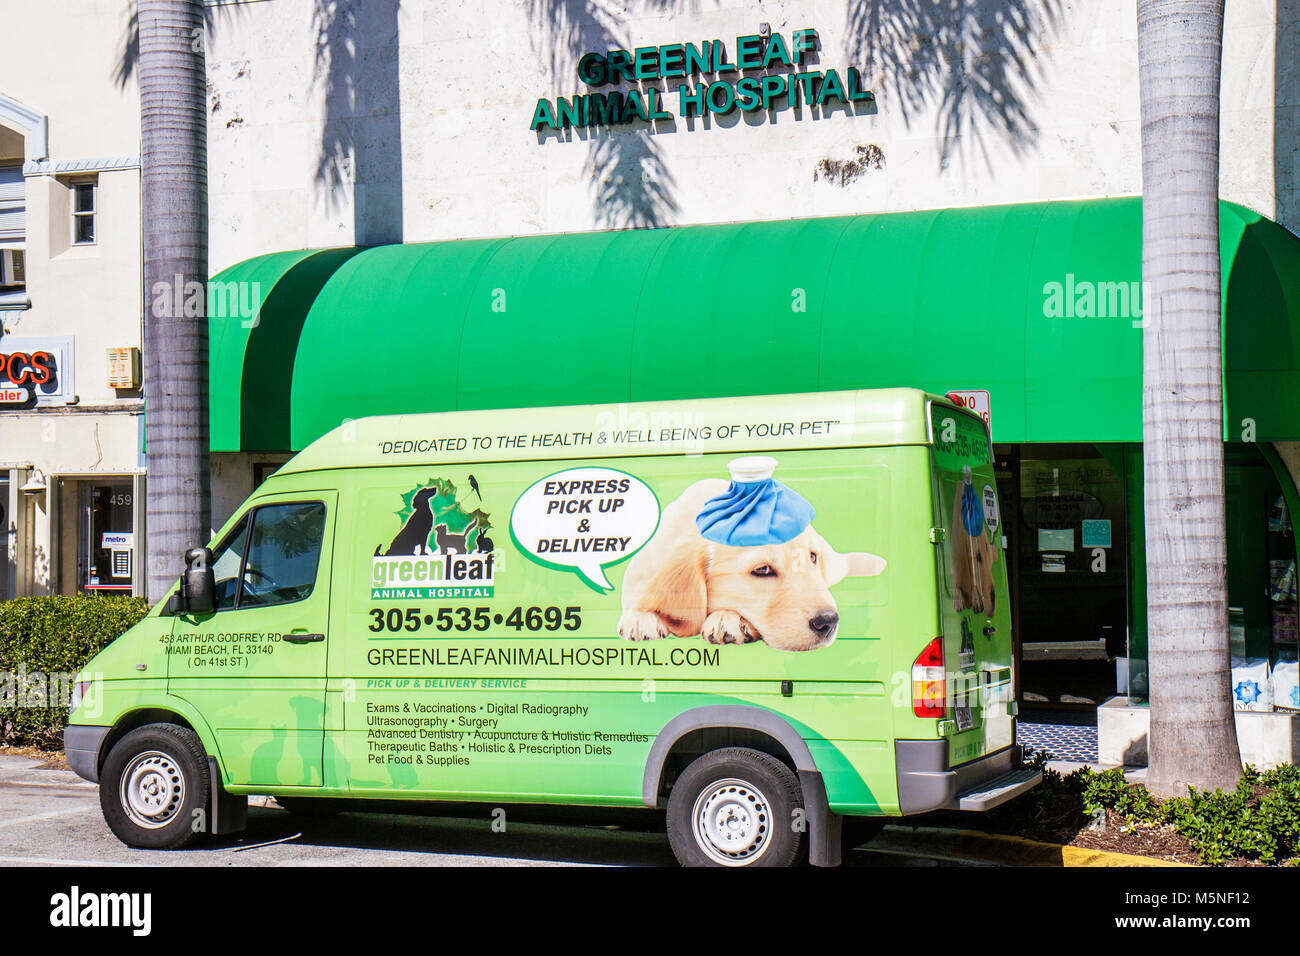 Miami Beach Florida,41st Street,Greenleaf Animal Hospital,santé,vétérinaire,vétérinaire,véhicule commercial,van,publicité,pub,animaux,santé,malade, Banque D'Images